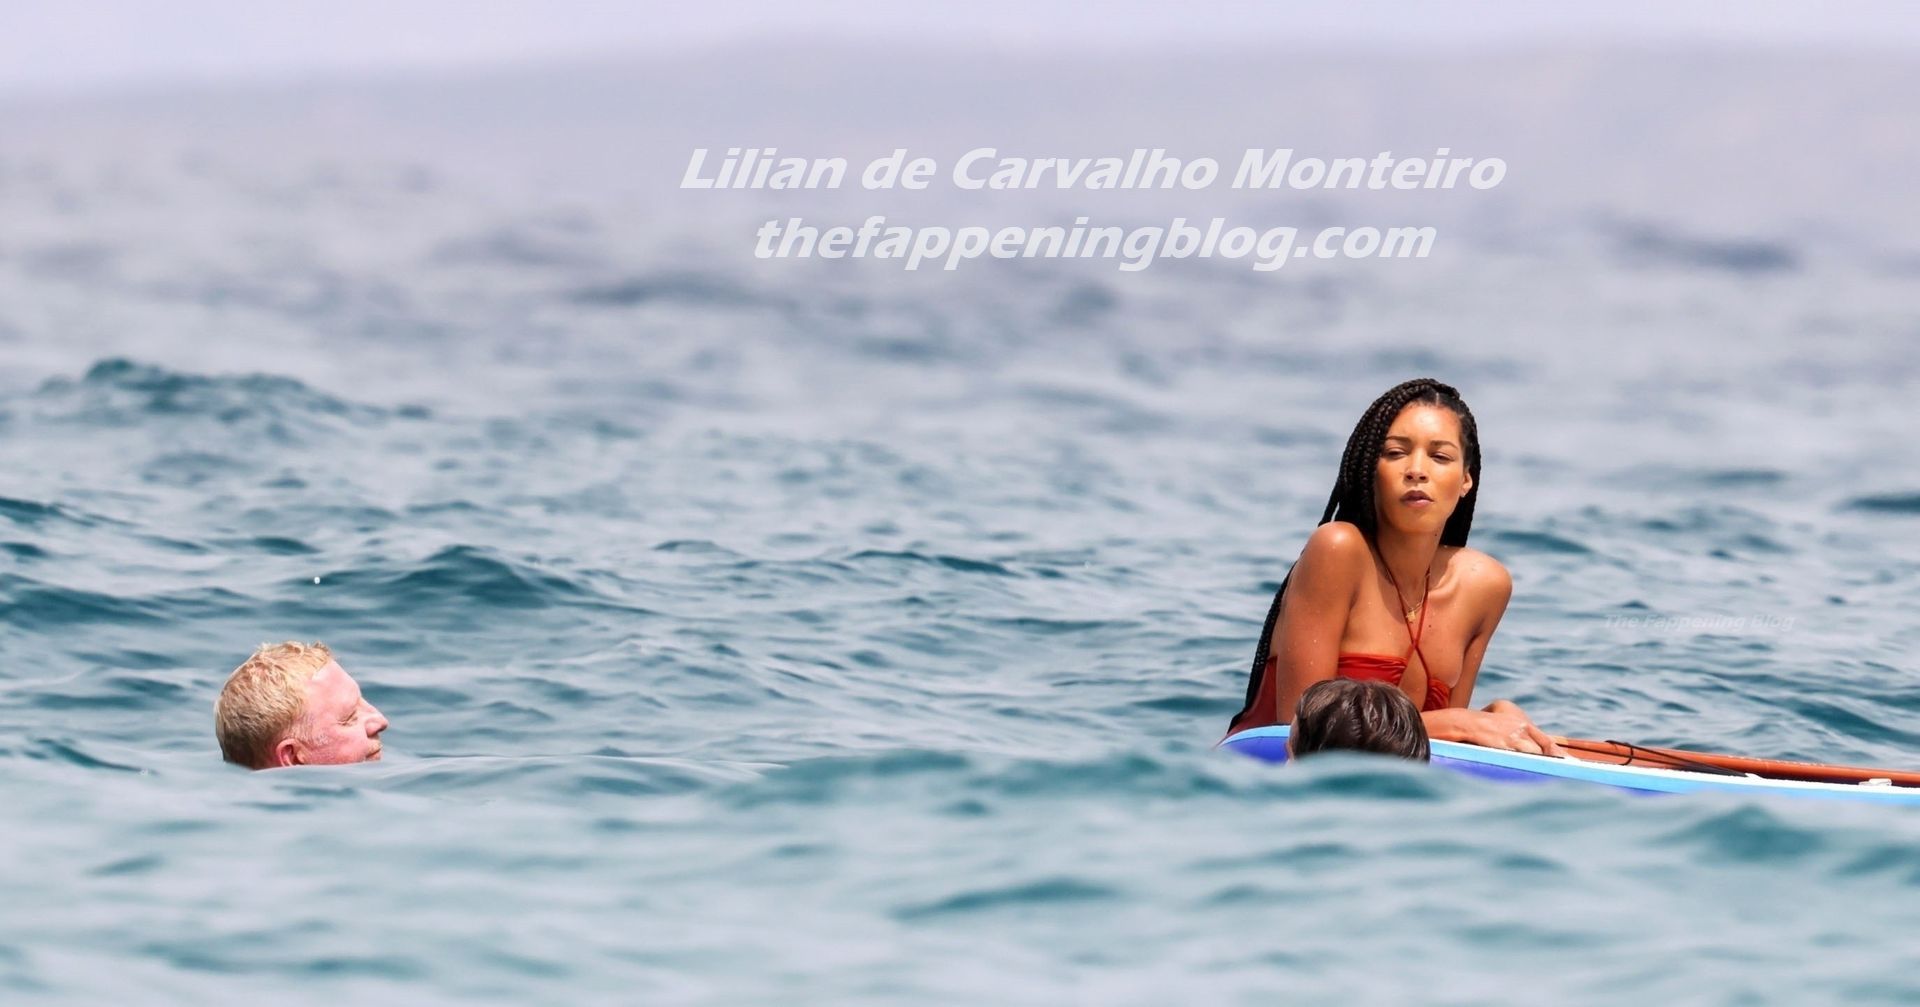 Lilian De Carvalho Monteiro Age